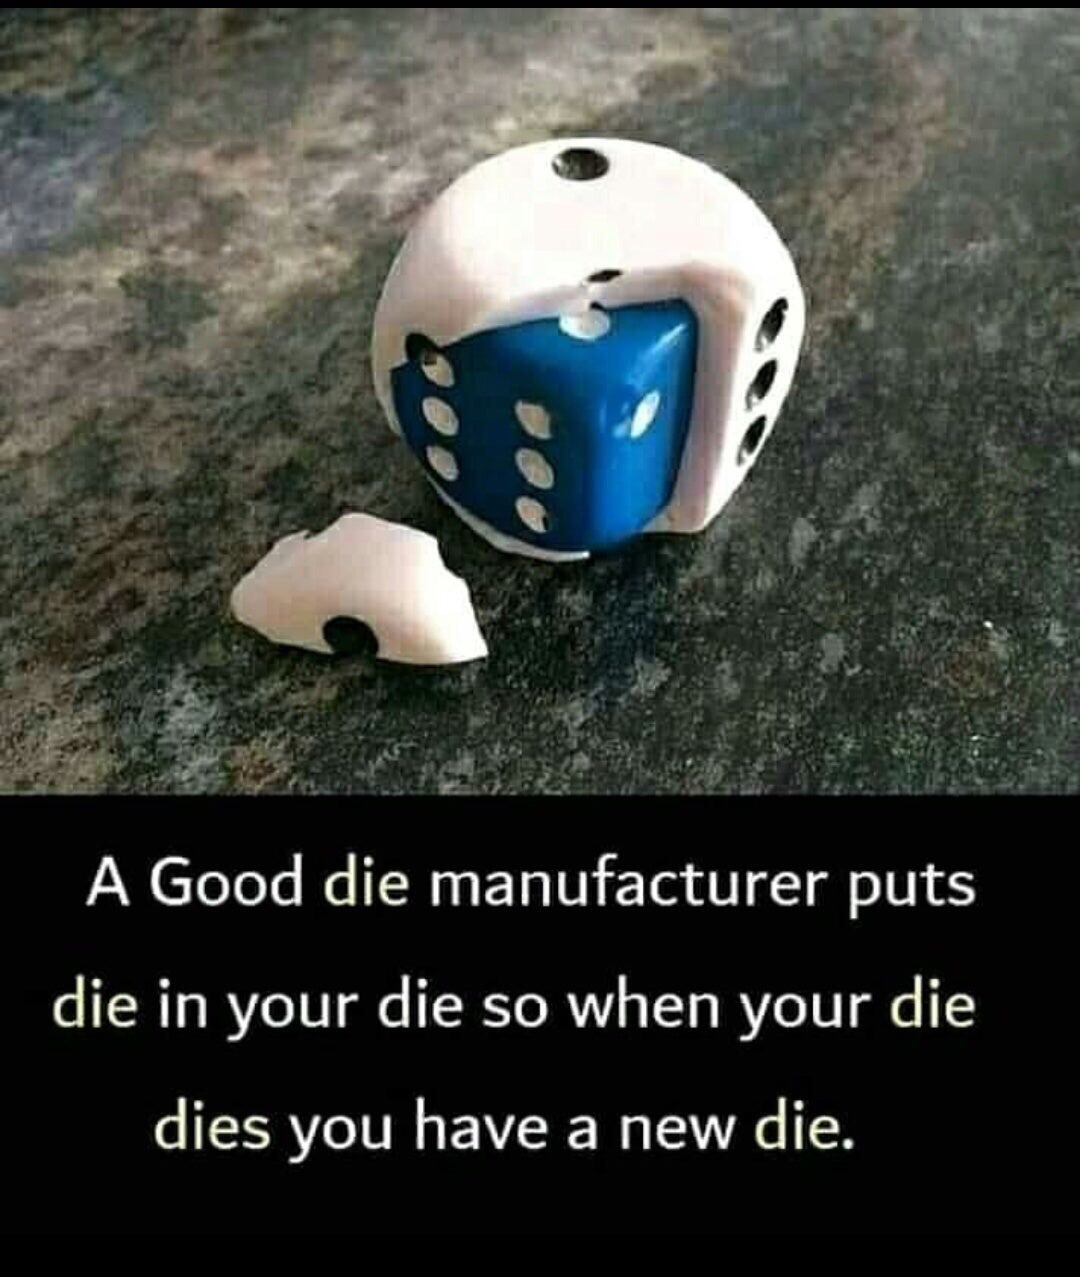 good guy die manufacturer - A Good die manufacturer puts die in your die so when your die dies you have a new die.